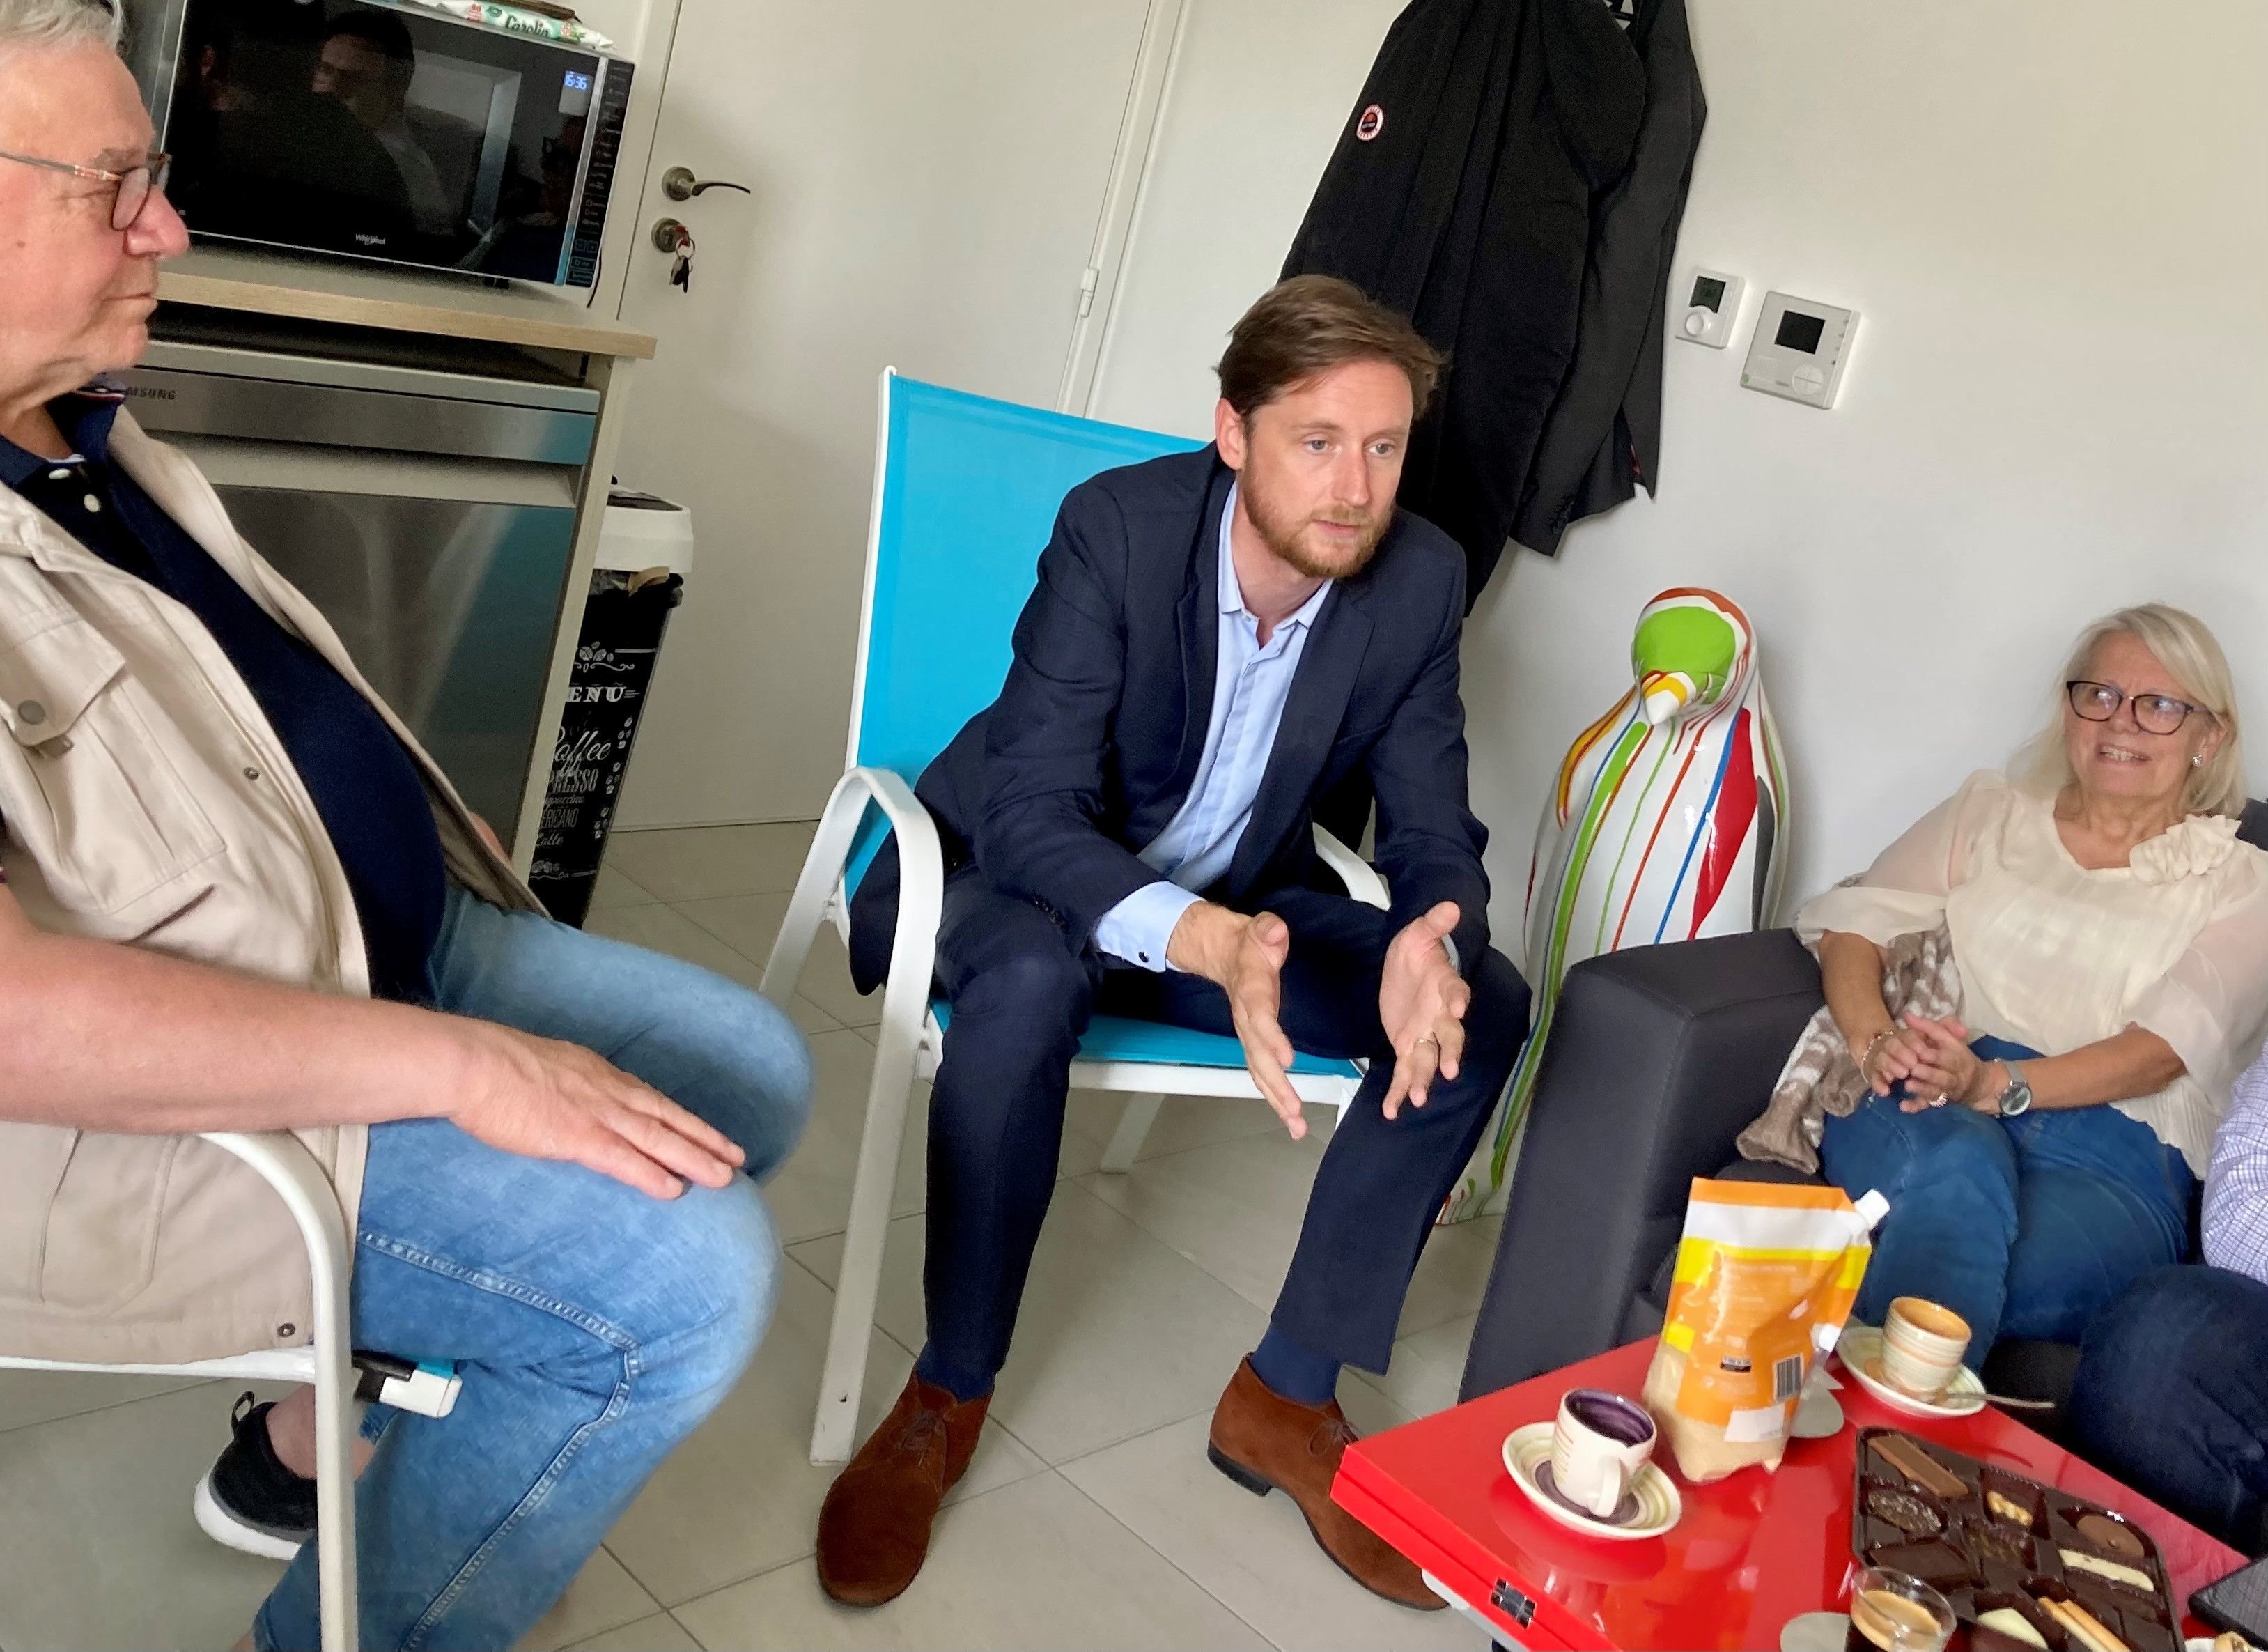 Le Perreux-sur-Marne, le 6 juin. Paul Bazin, le candidat LR, échange avec des électeurs lors d'une réunion d'appartement. LP/Agnès Vives